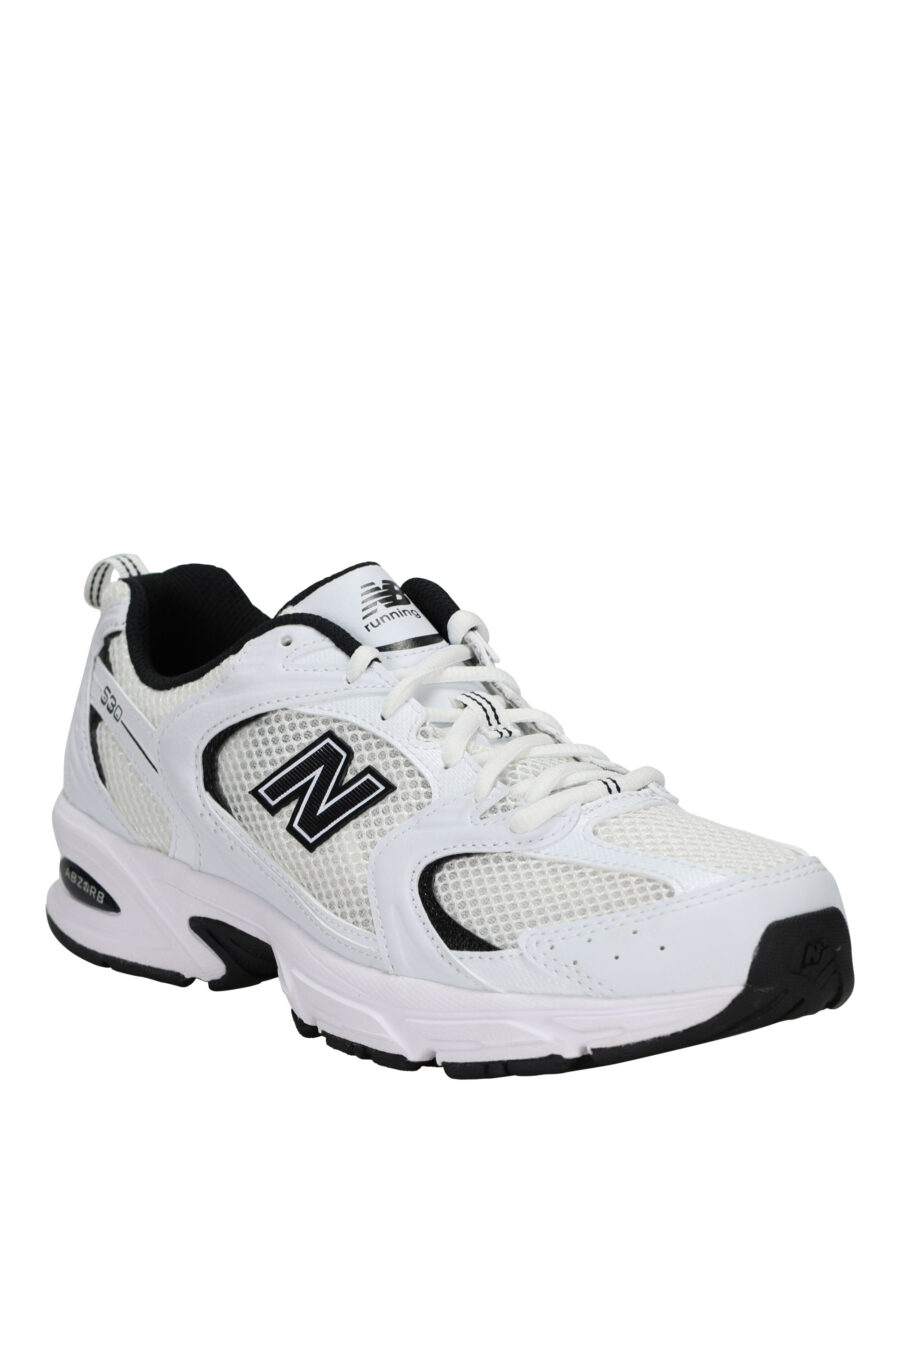 Zapatillas blancas con negro "530" con logo "N" negro - 196071167954 1